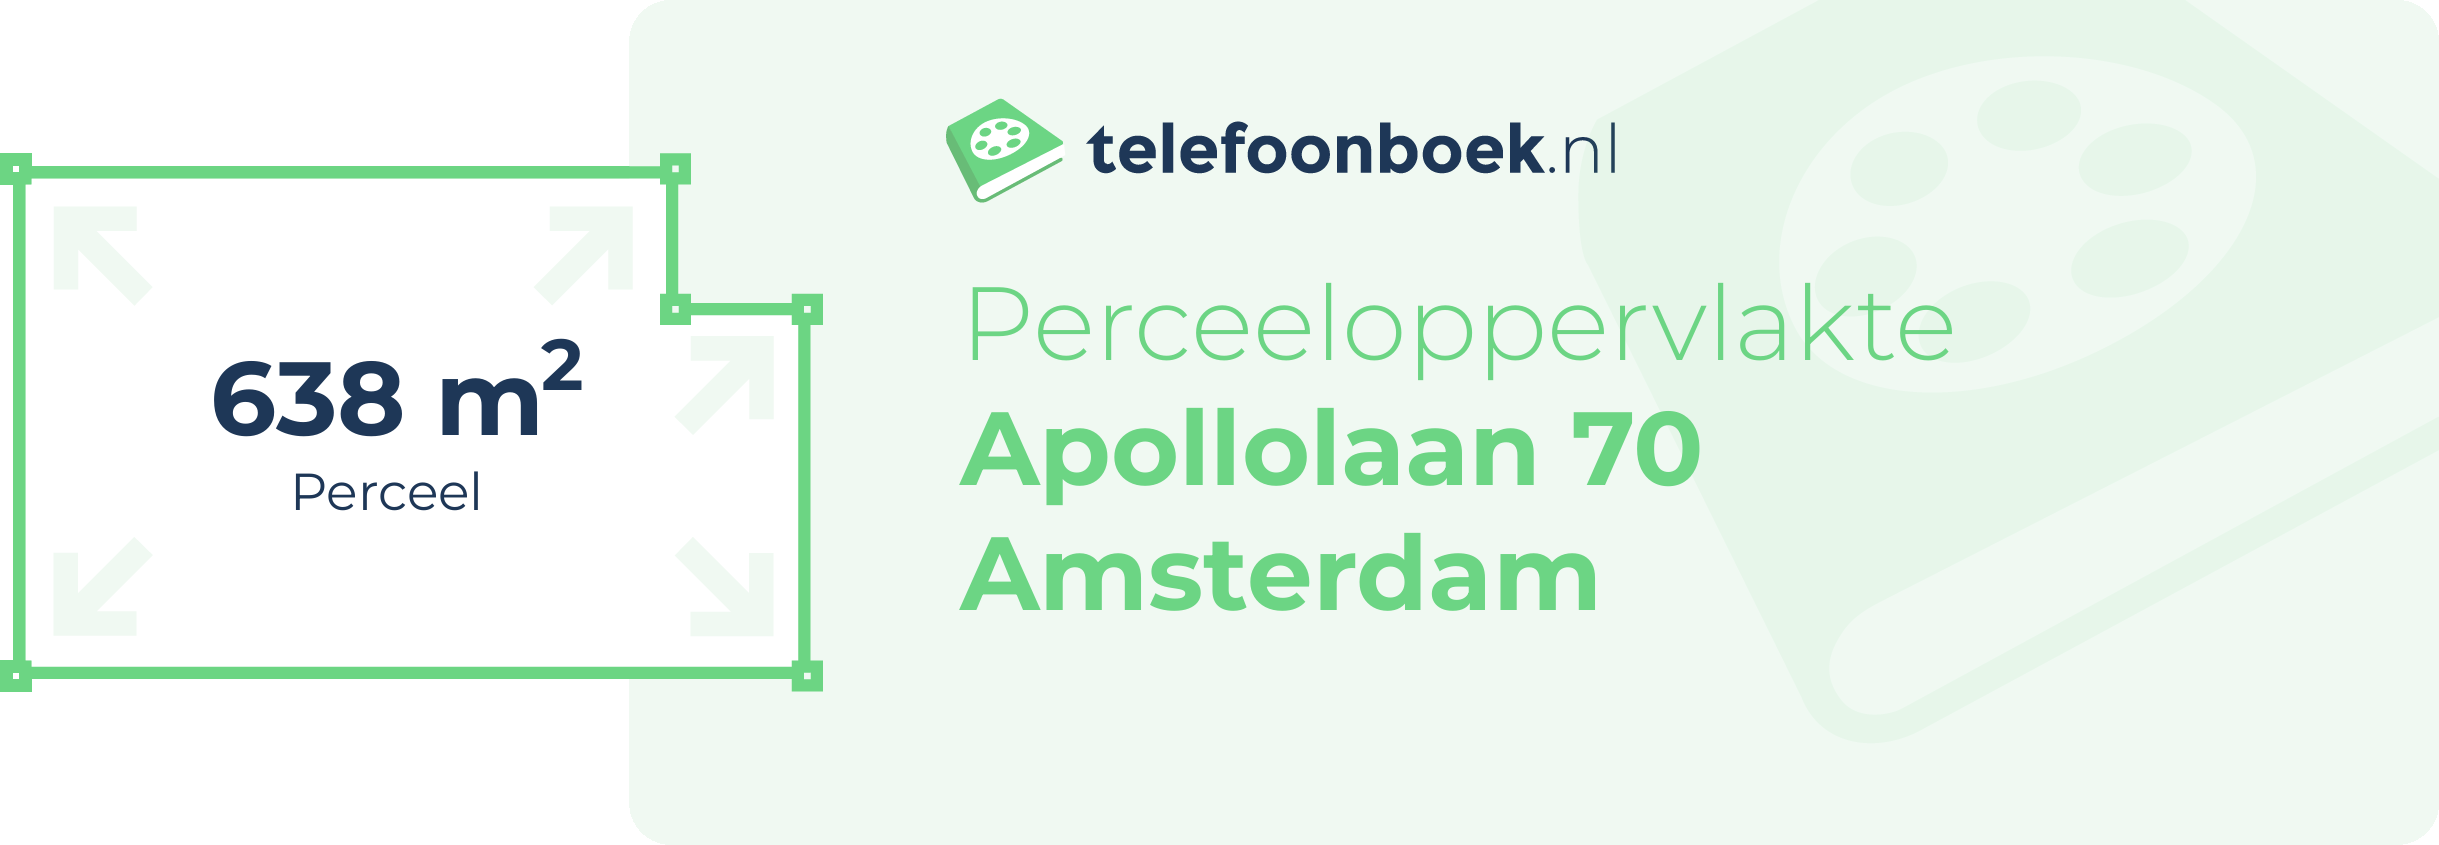 Perceeloppervlakte Apollolaan 70 Amsterdam